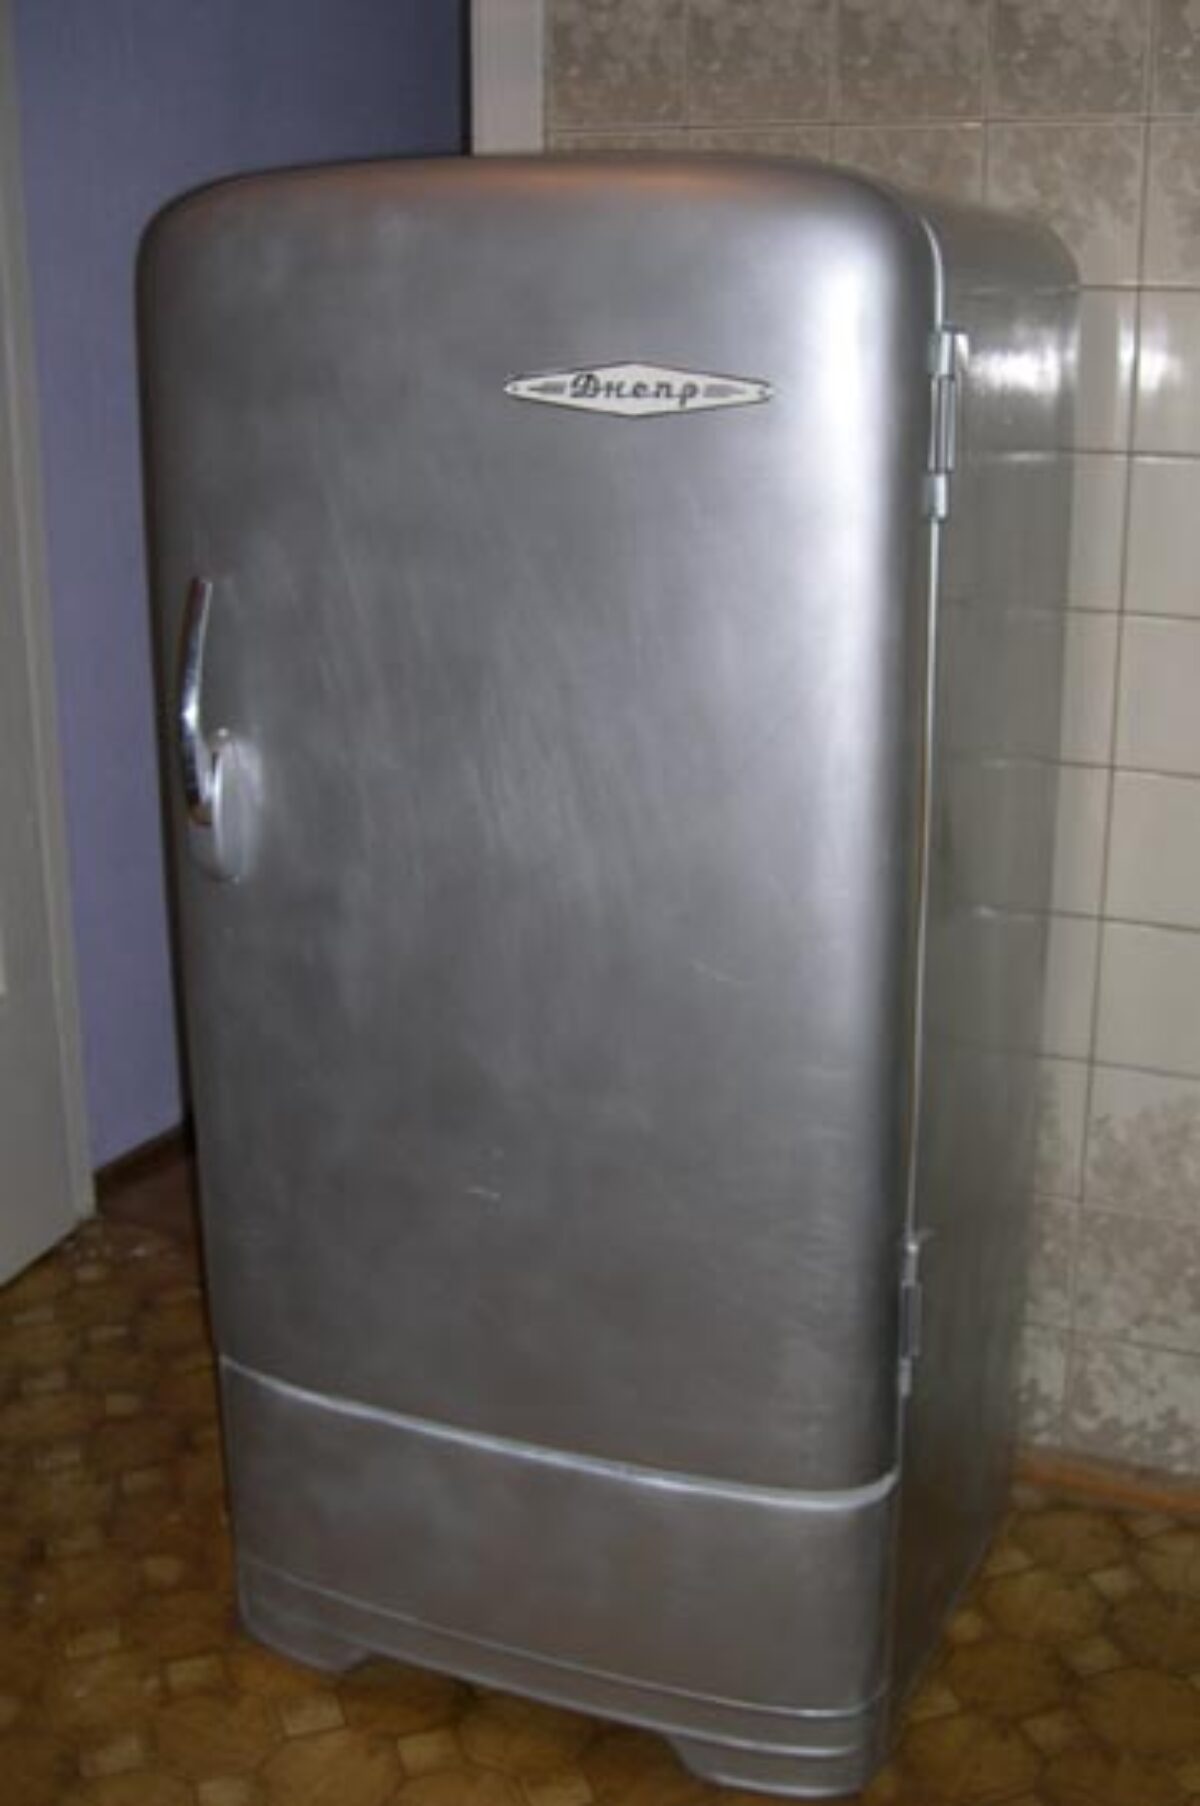 Как дешево сделать реставрацию и обновить старый холодильник